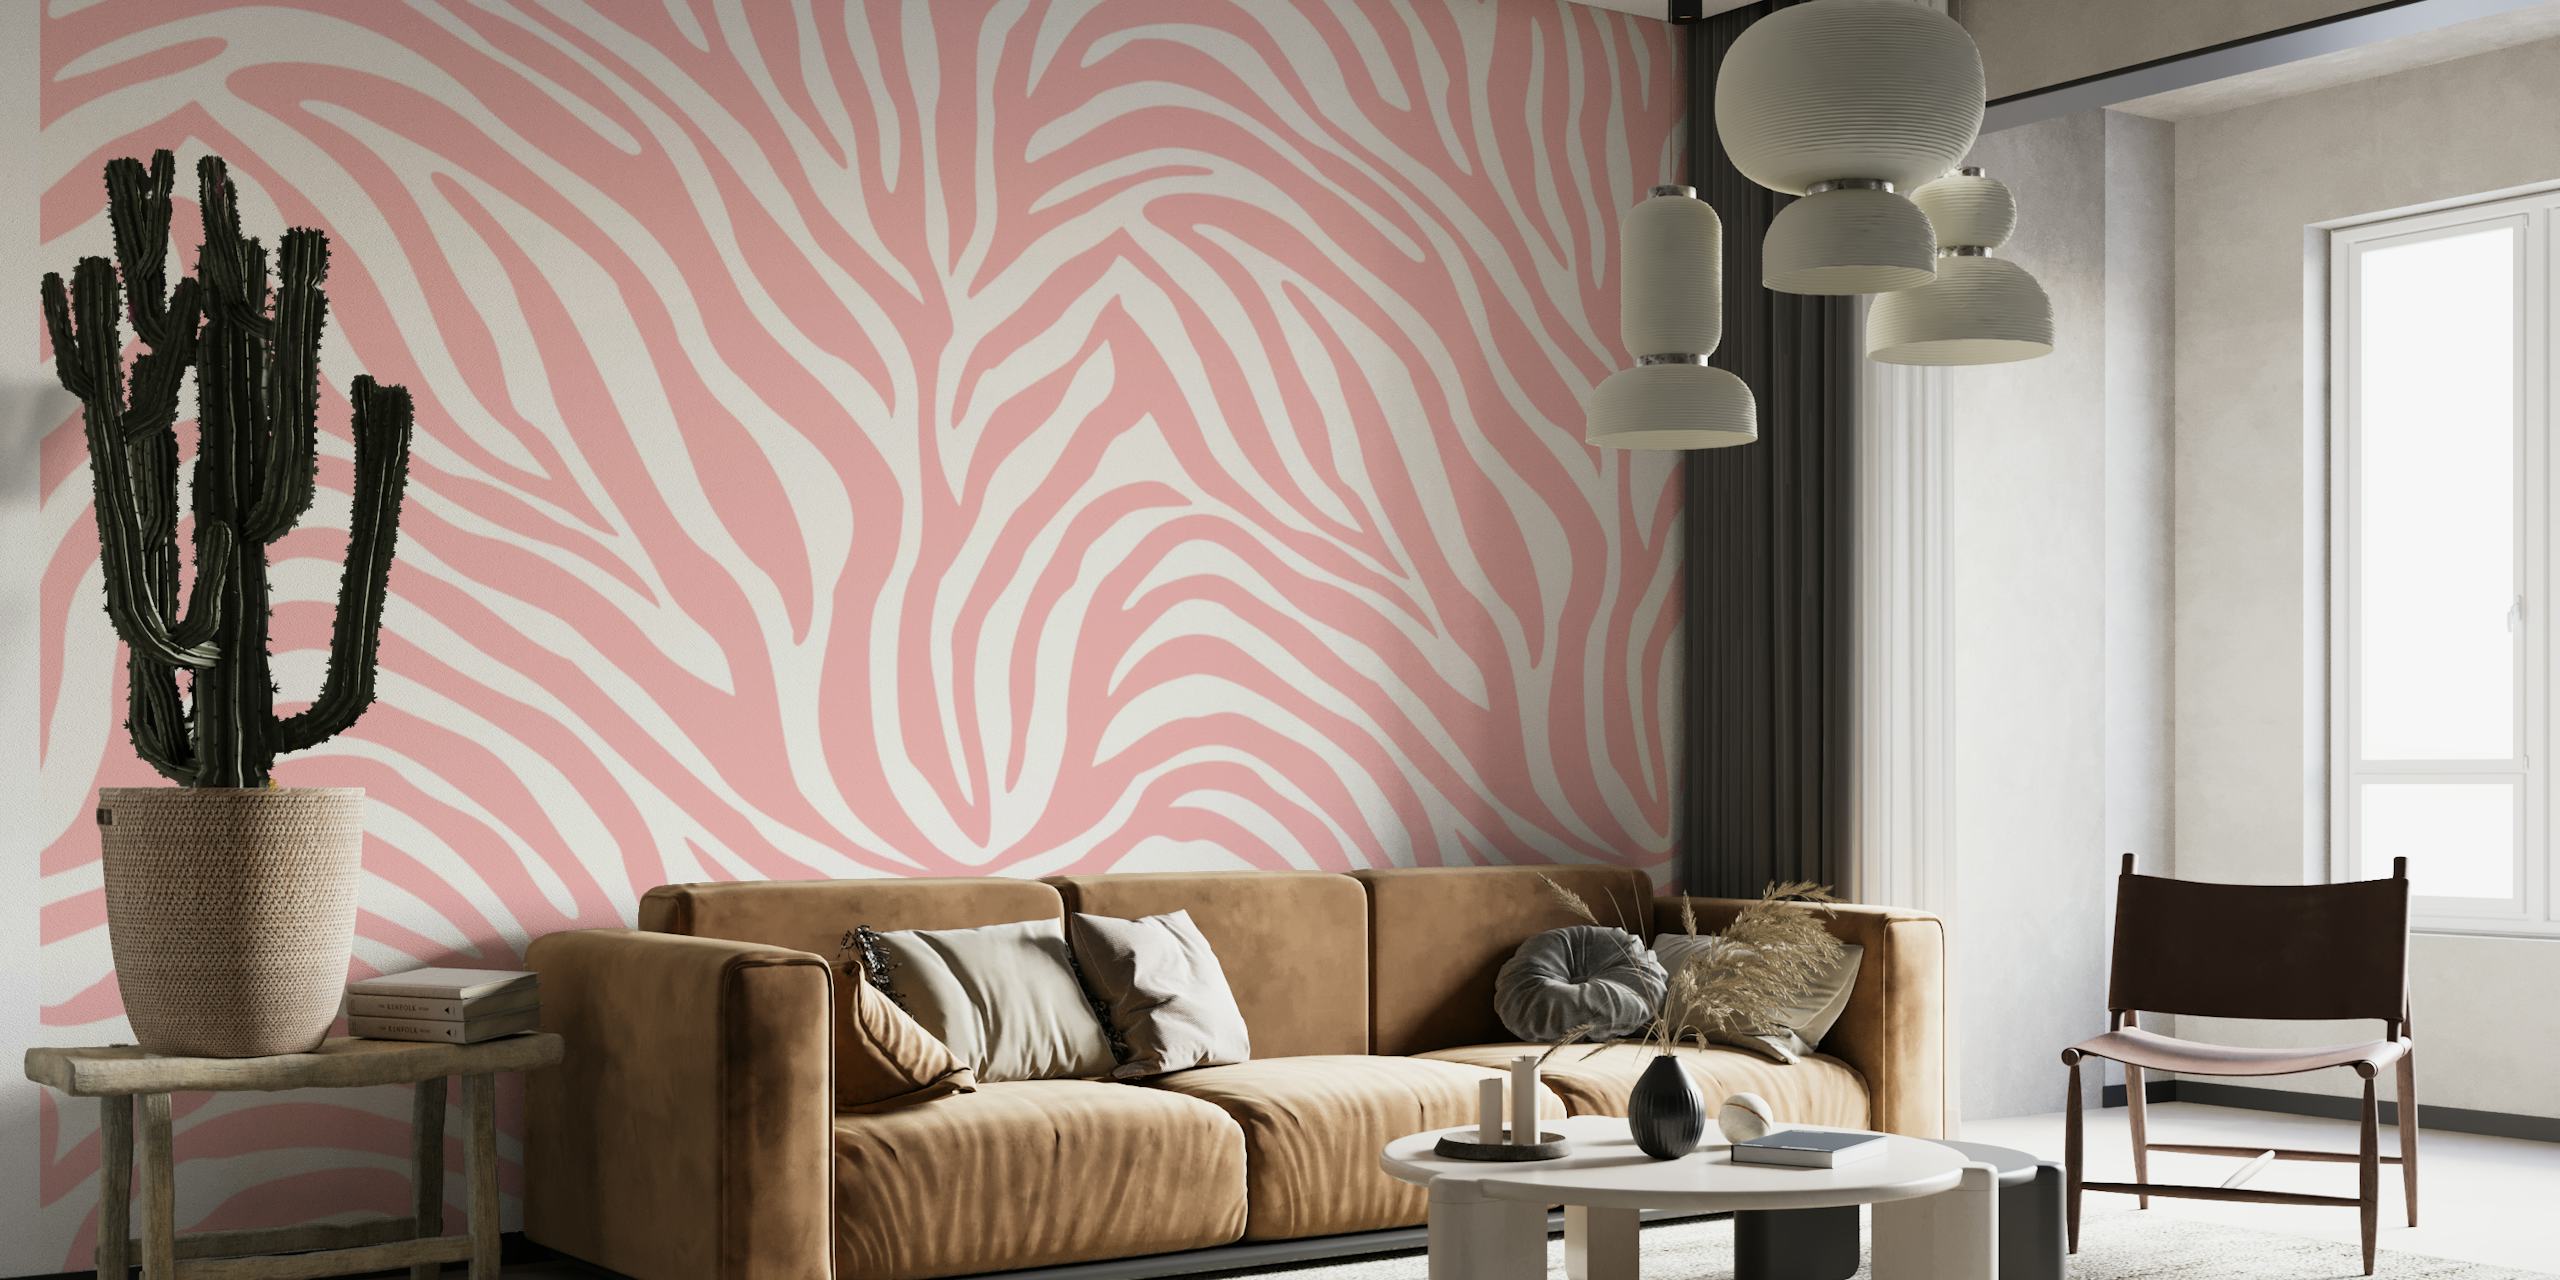 Pink zebra pattern behang